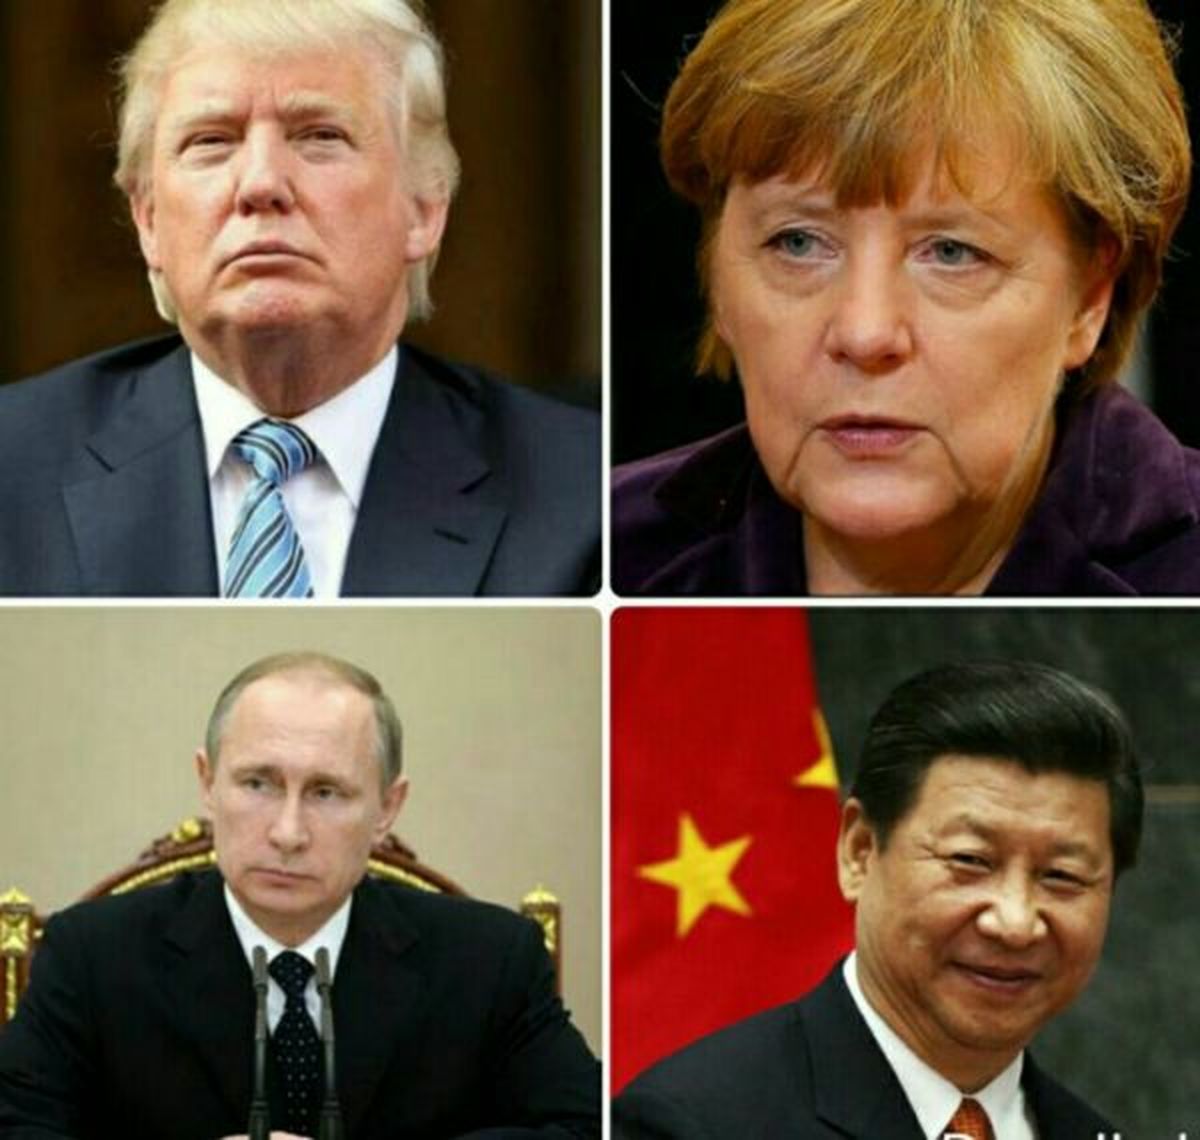 محبوب ترین و غیر اعتماد ترین رهبران جهان چه کسانی هستند؟